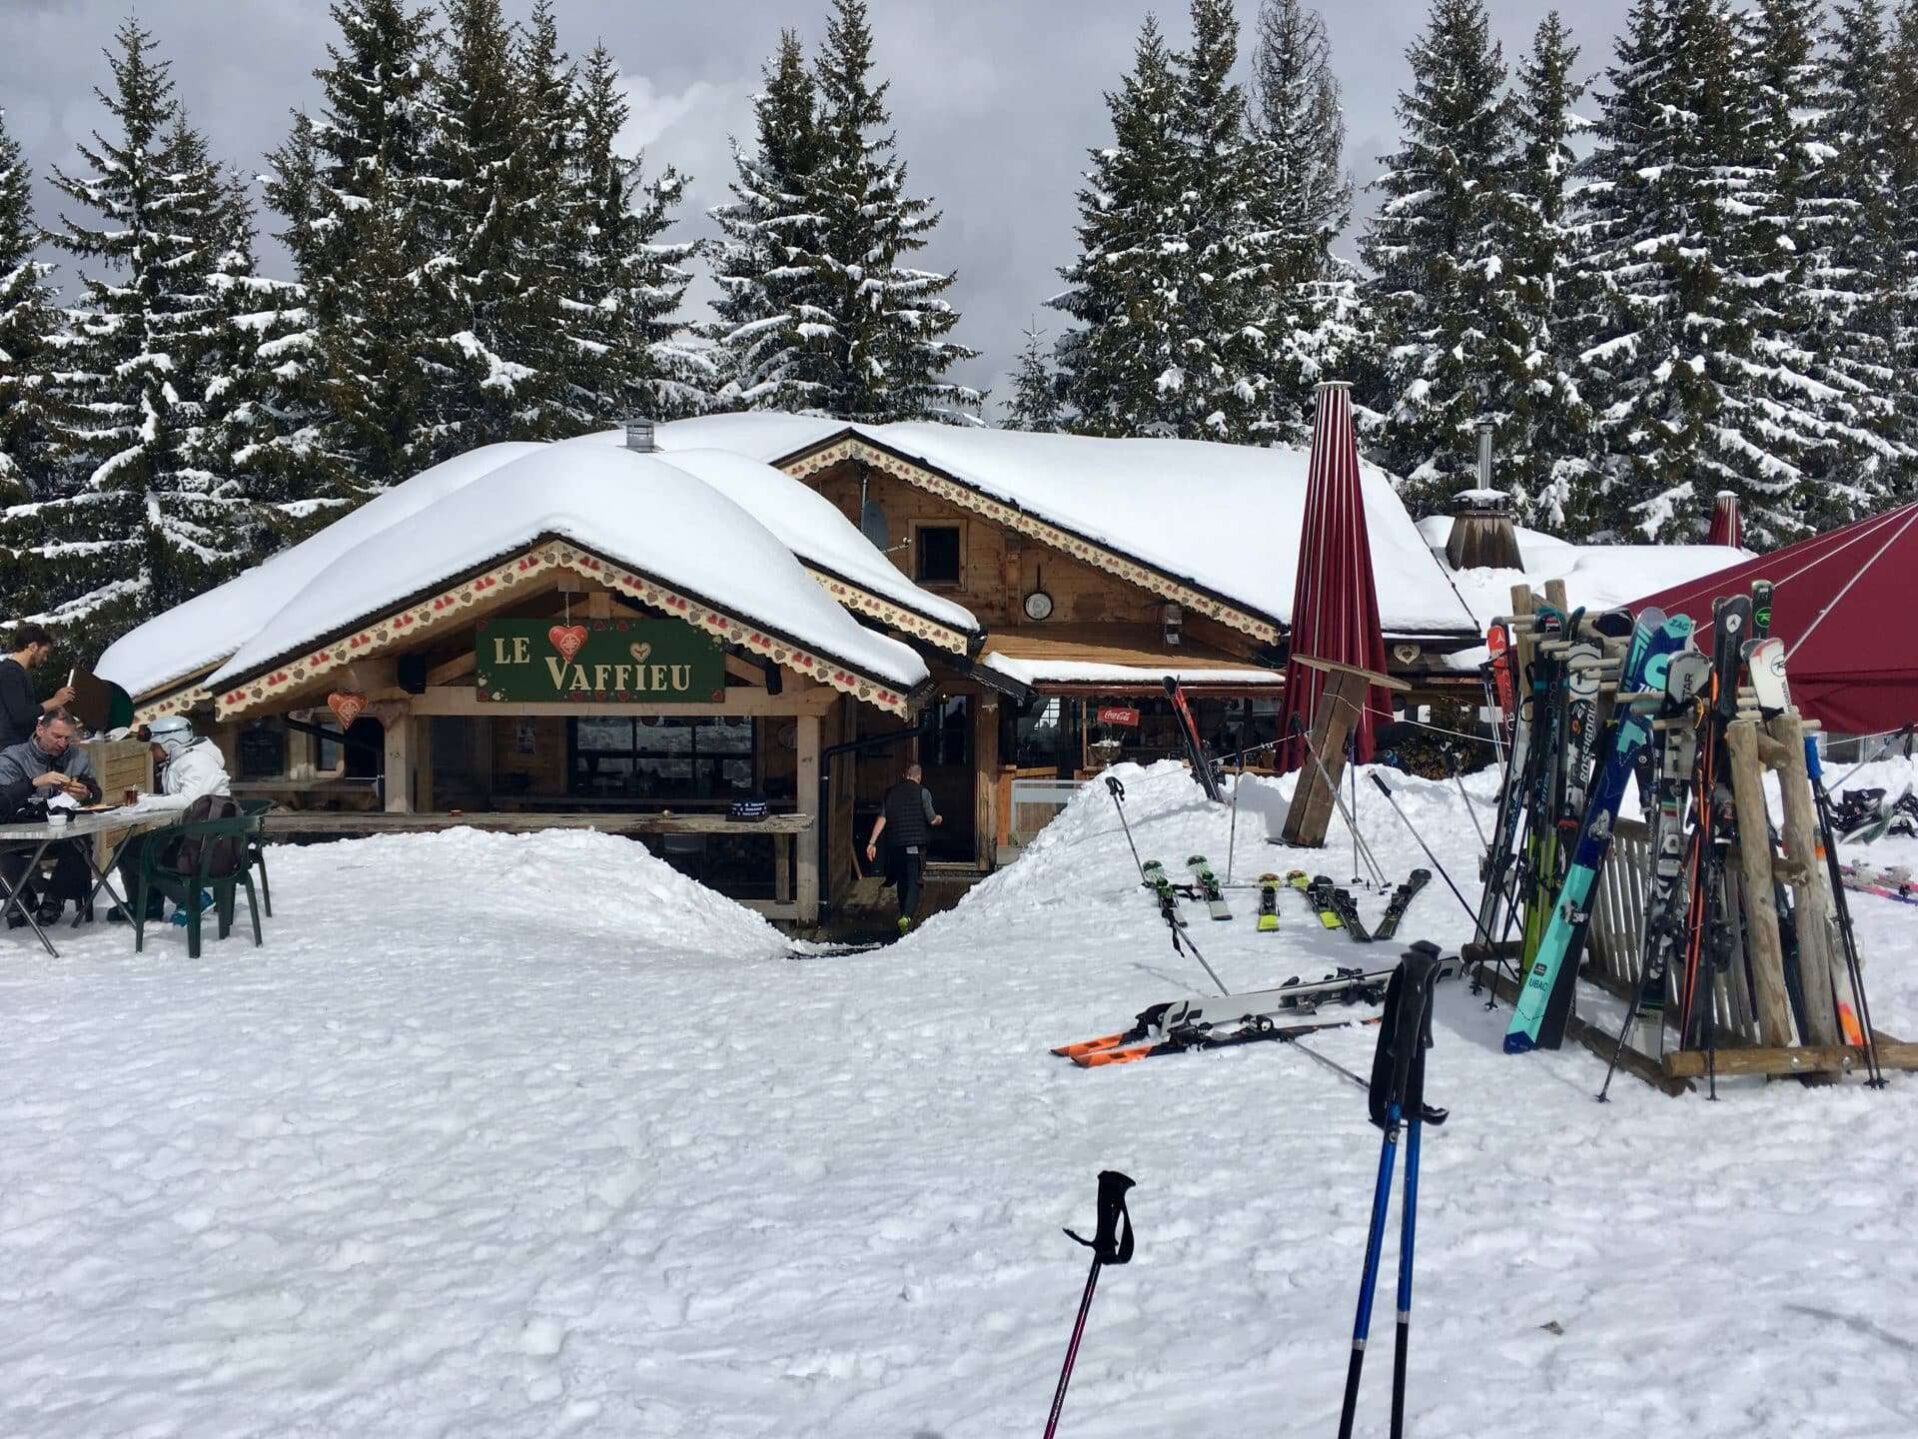 Een gezellige berghut genaamd 'Le Vaffieu' in het skigebied Portes du Soleil, gelegen te midden van besneeuwde bomen. Buiten de hut zijn skiërs te zien die genieten van hun maaltijd aan houten tafels. Diverse ski's en skistokken zijn geparkeerd in de sneeuw in de voorgrond.